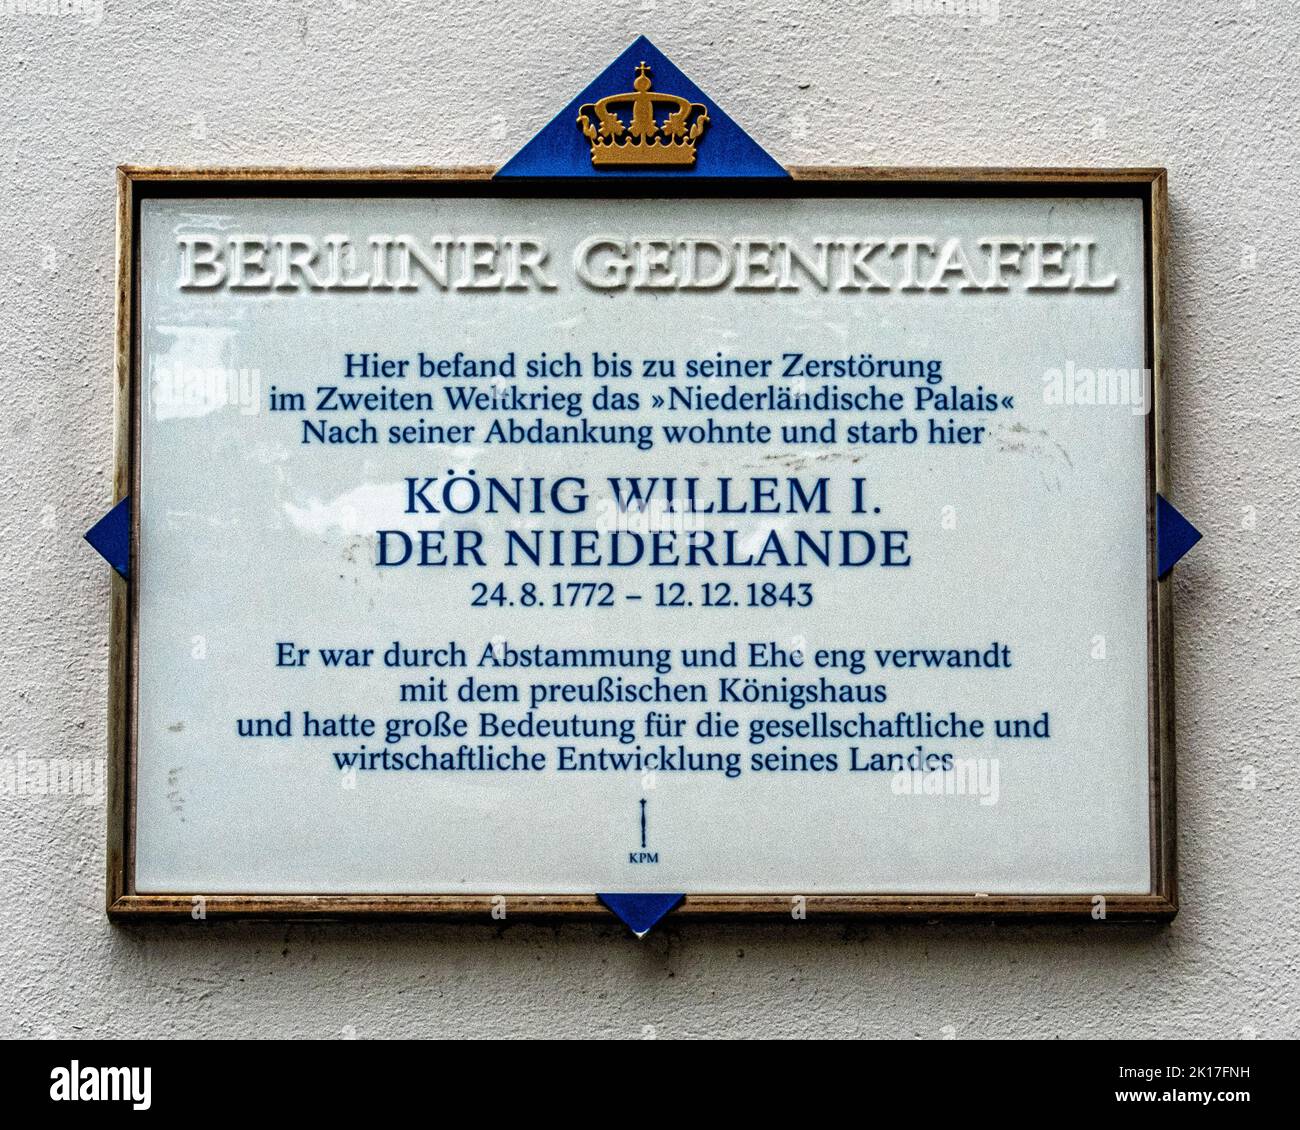 Berliner Gedenktafel, Commemorative plaque remembers King Willem 1 of the Netherlands, Unter den Linden, Berlin Stock Photo